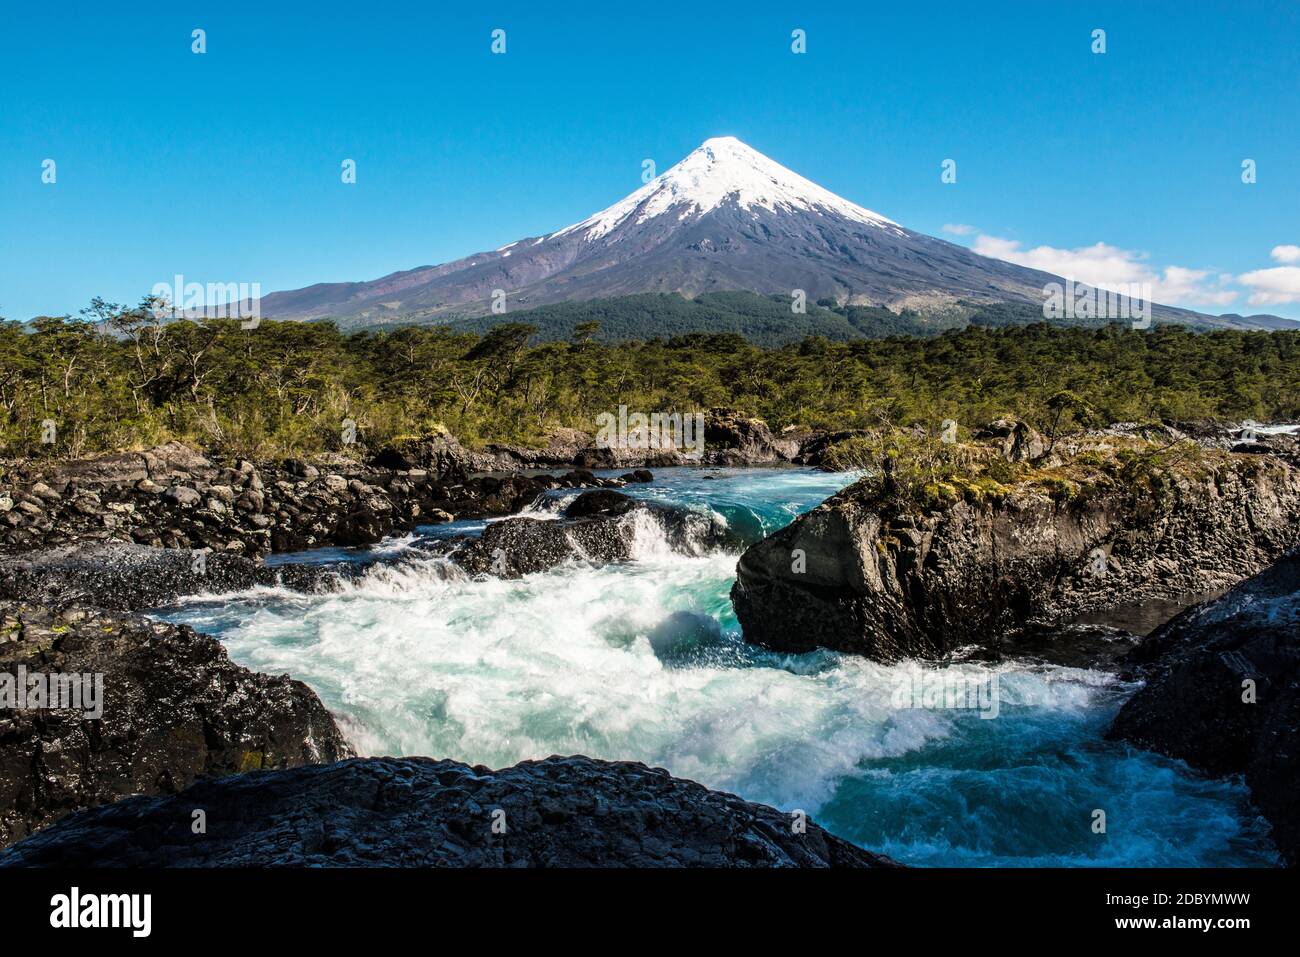 Saltos de Petrohue avec le volcan Osorno, Chili Banque D'Images